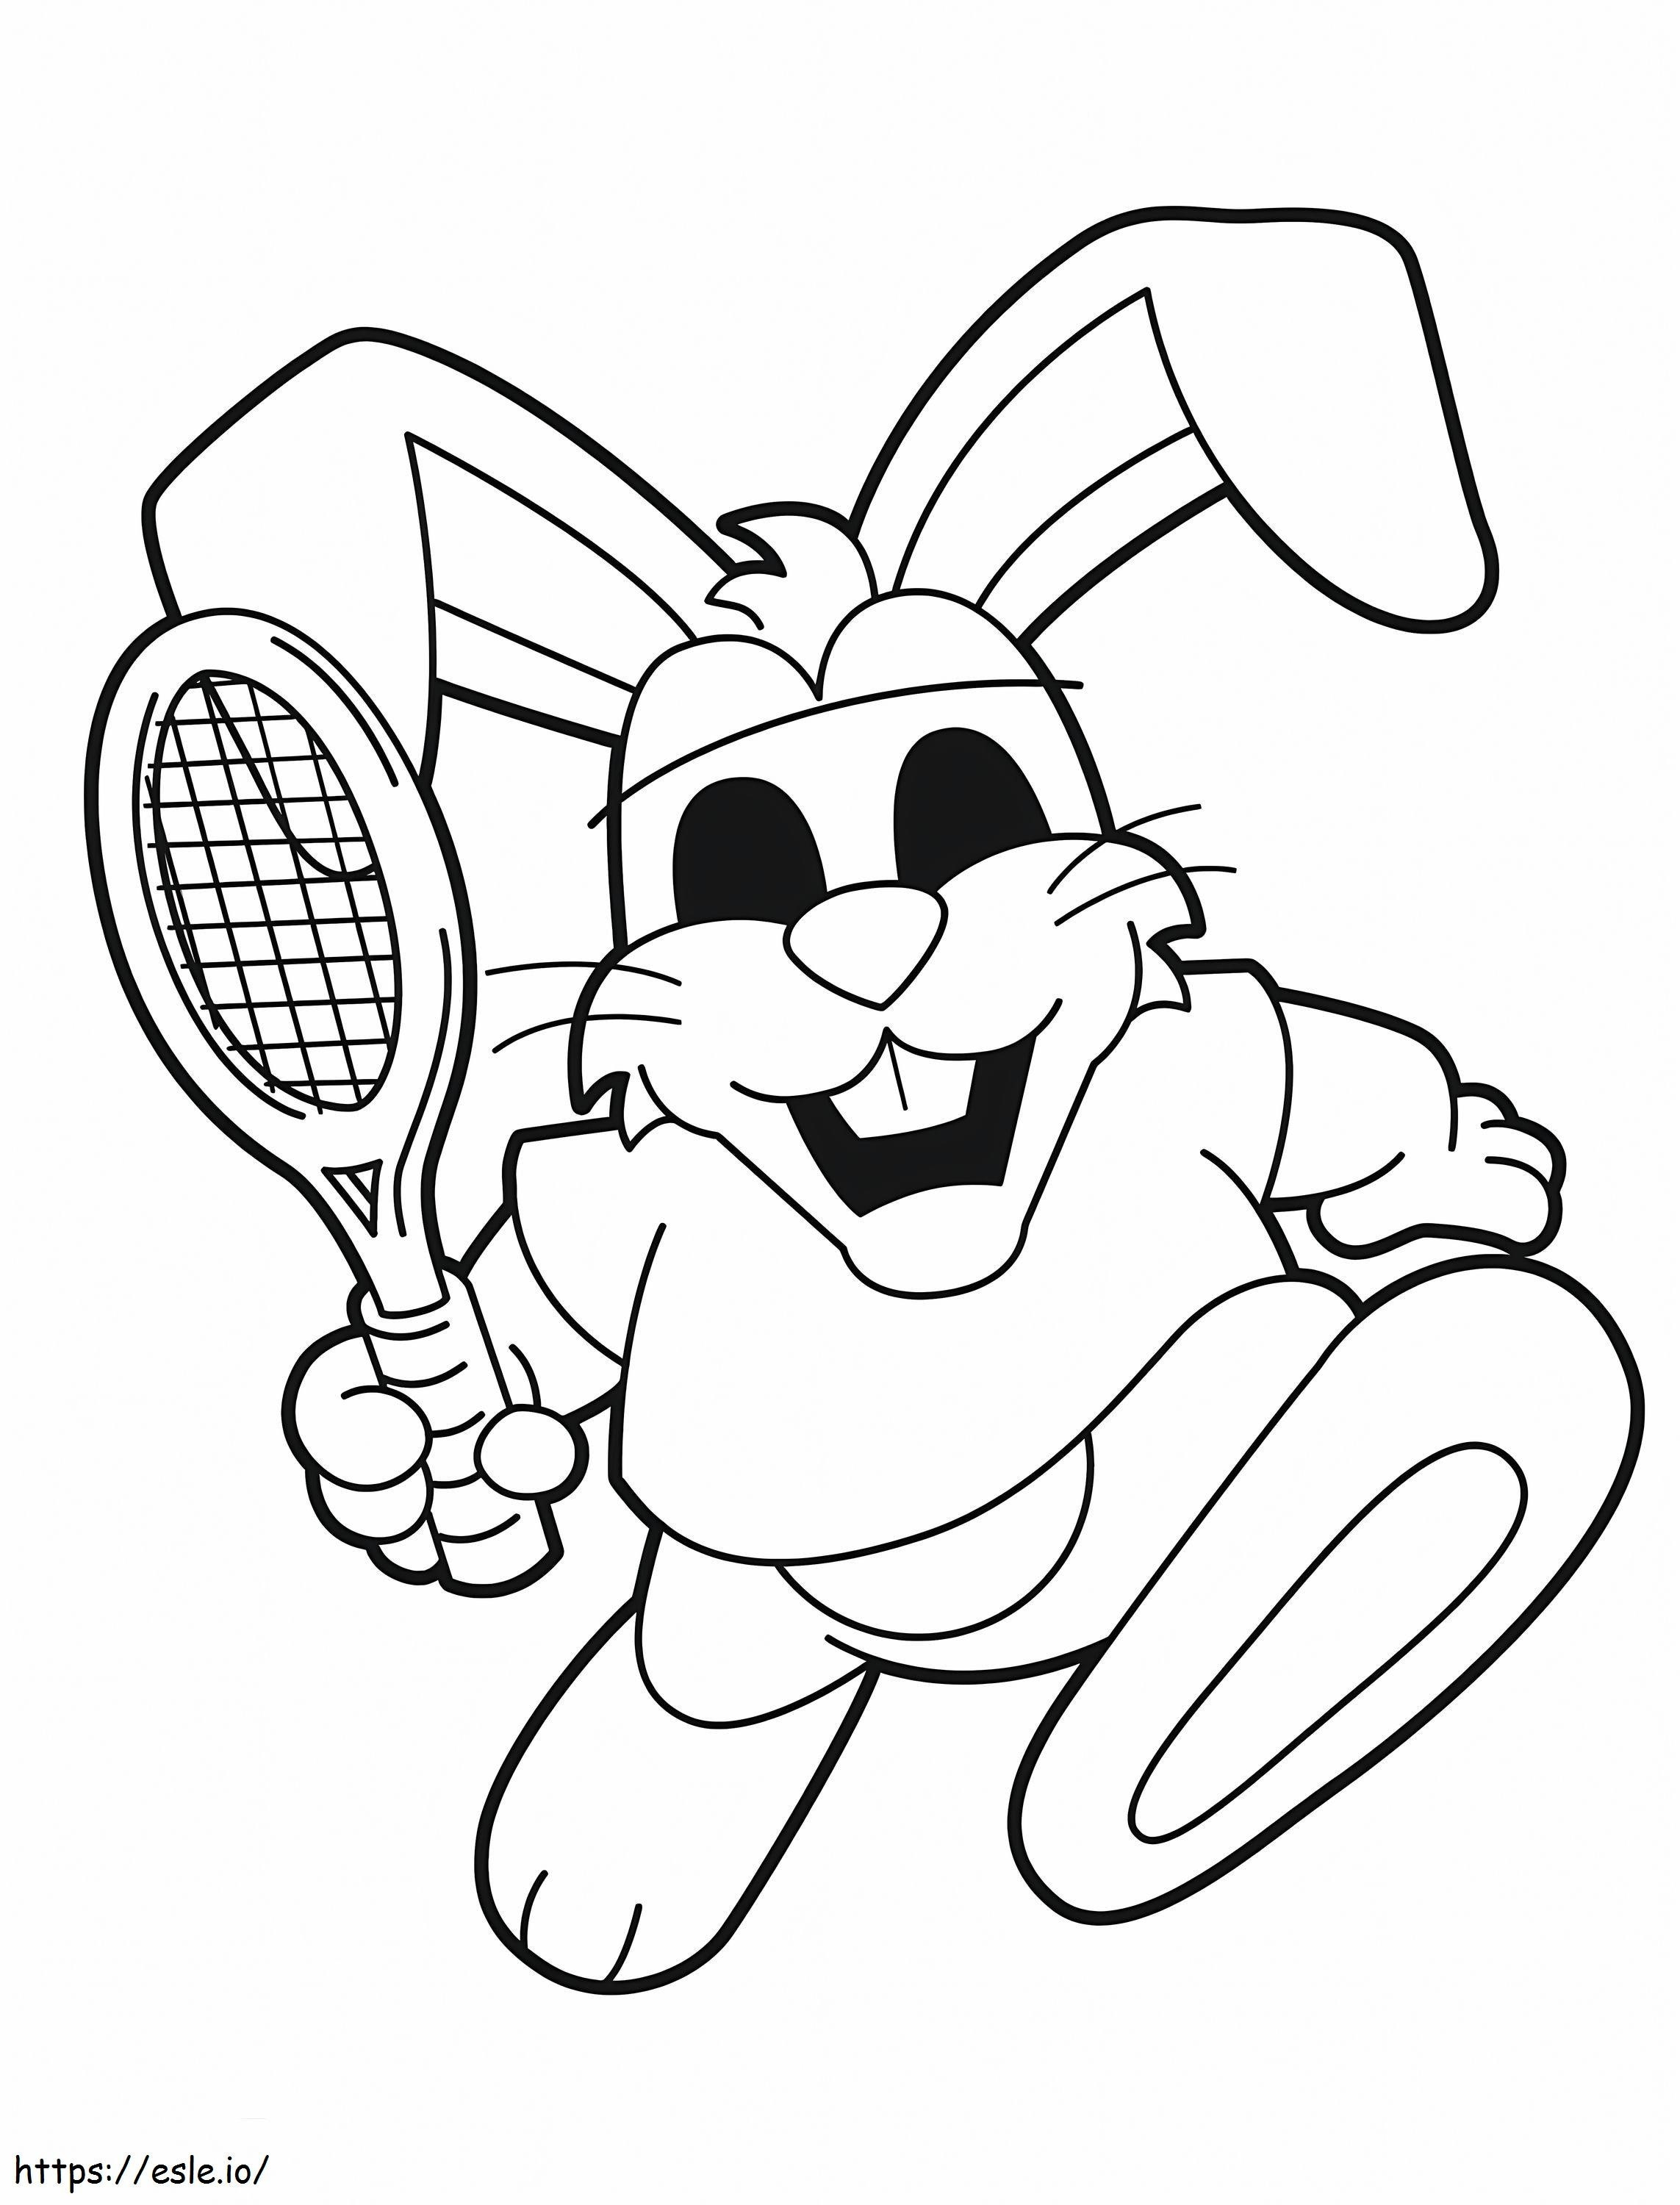 Tenis oynayan tavşan boyama